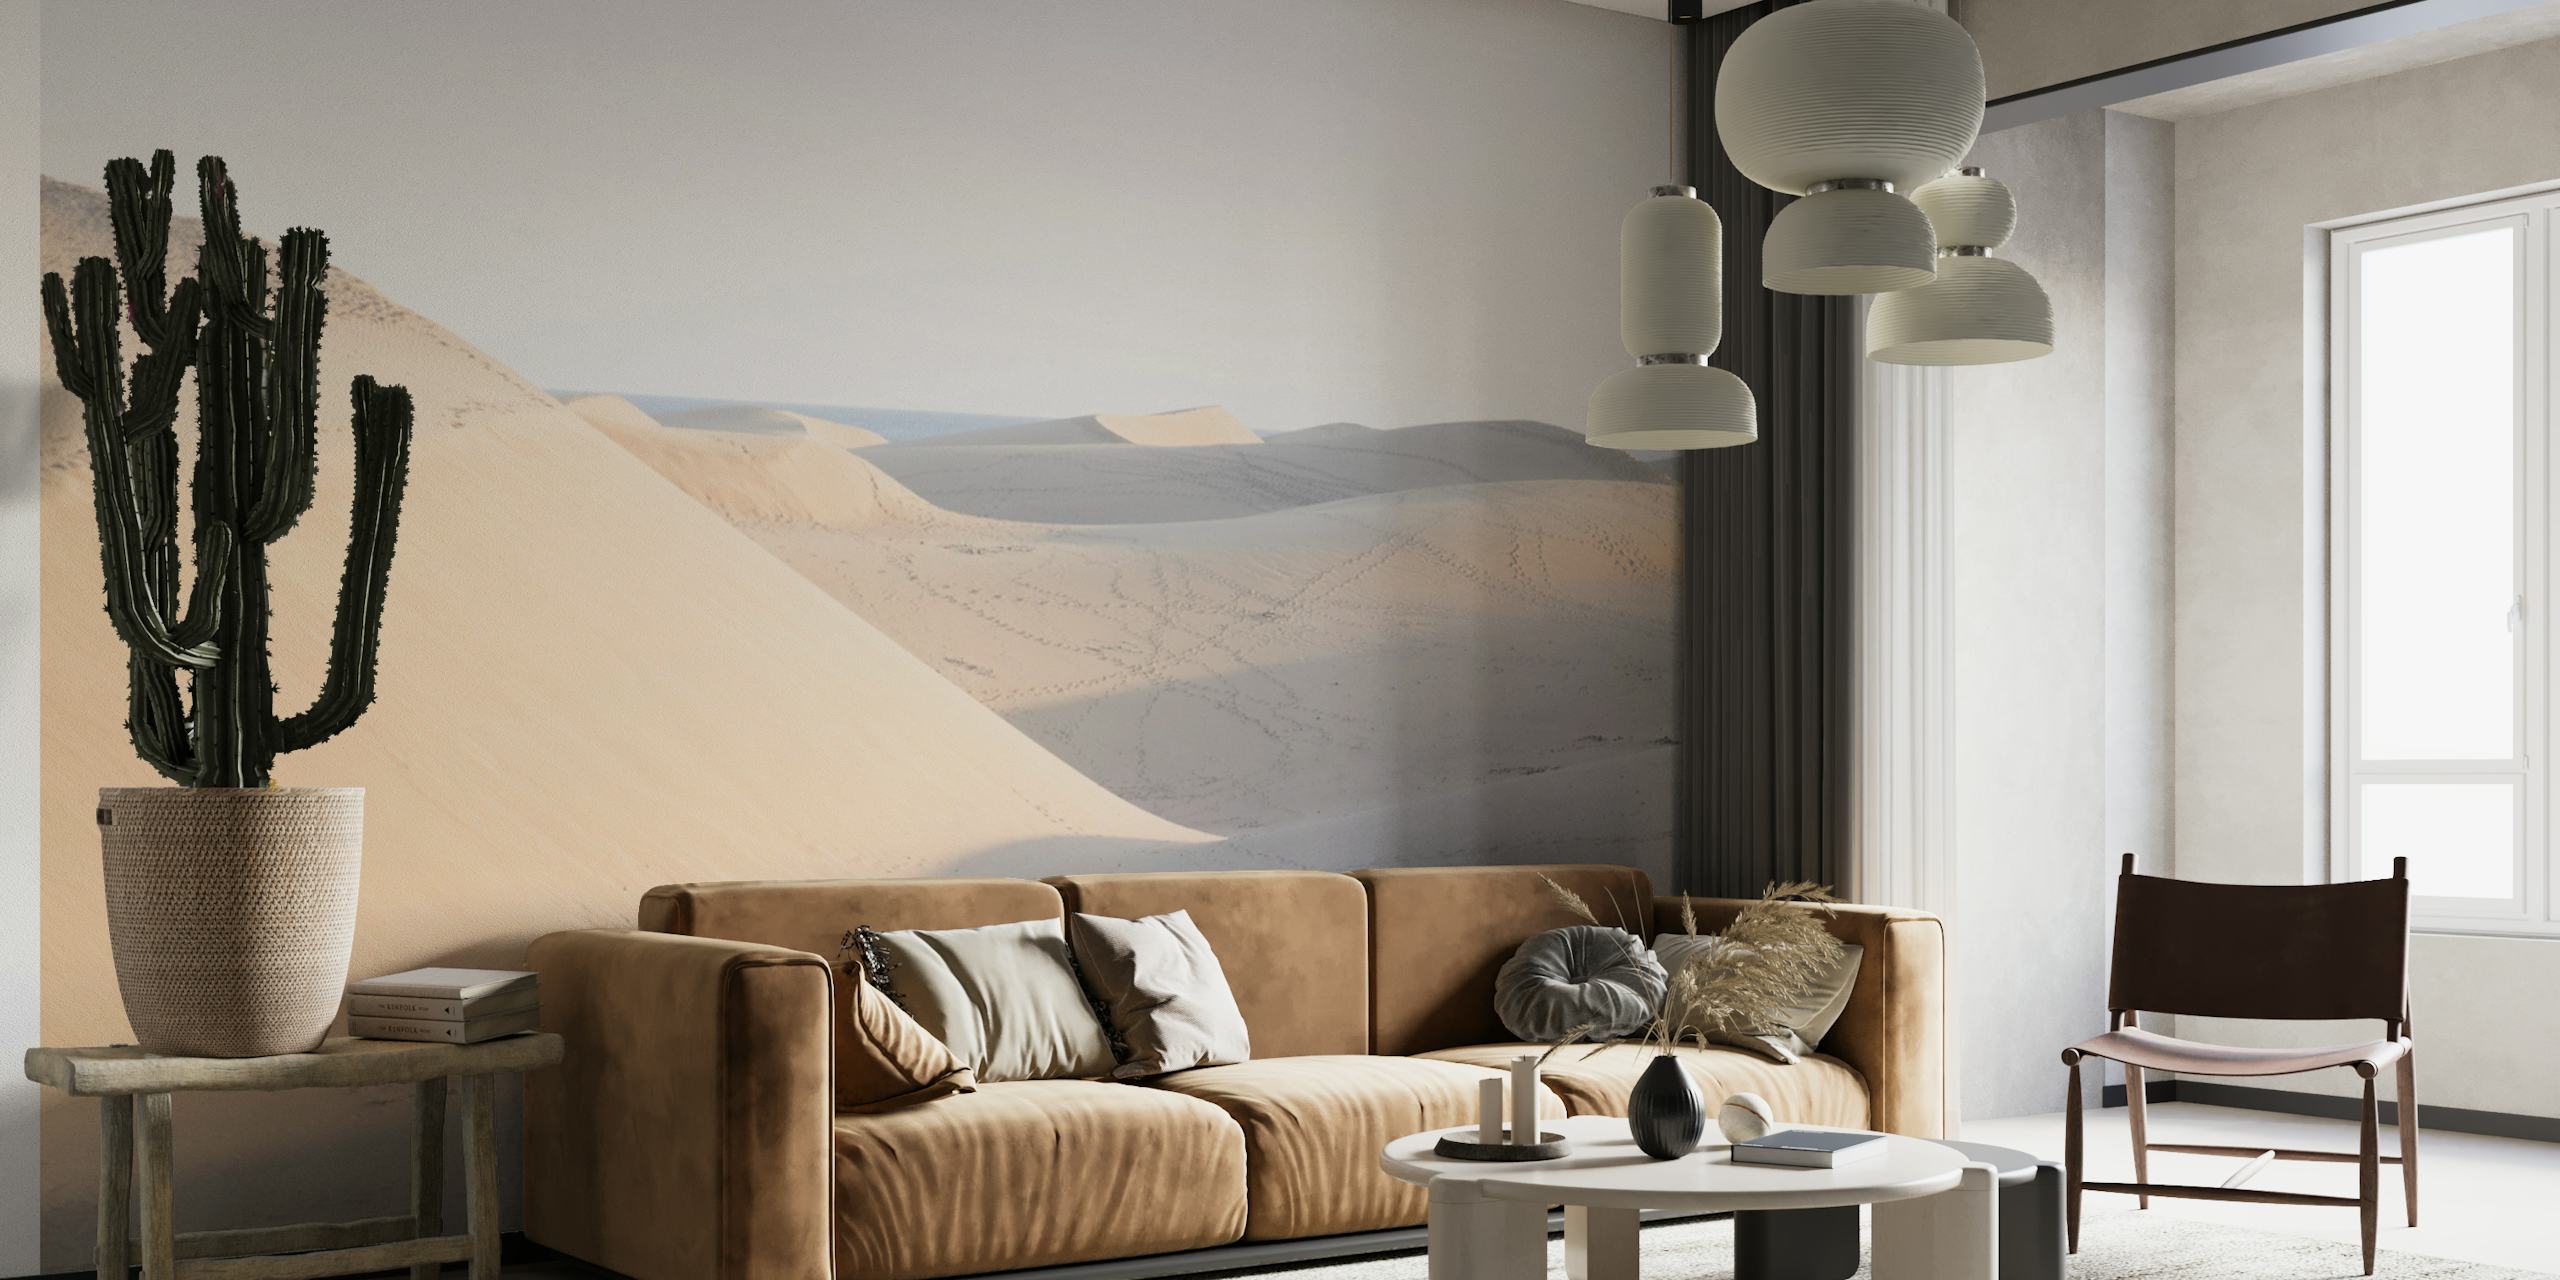 Fotomural vinílico de parede tranquilo com cena do deserto com dunas suaves e sombreamento sutil